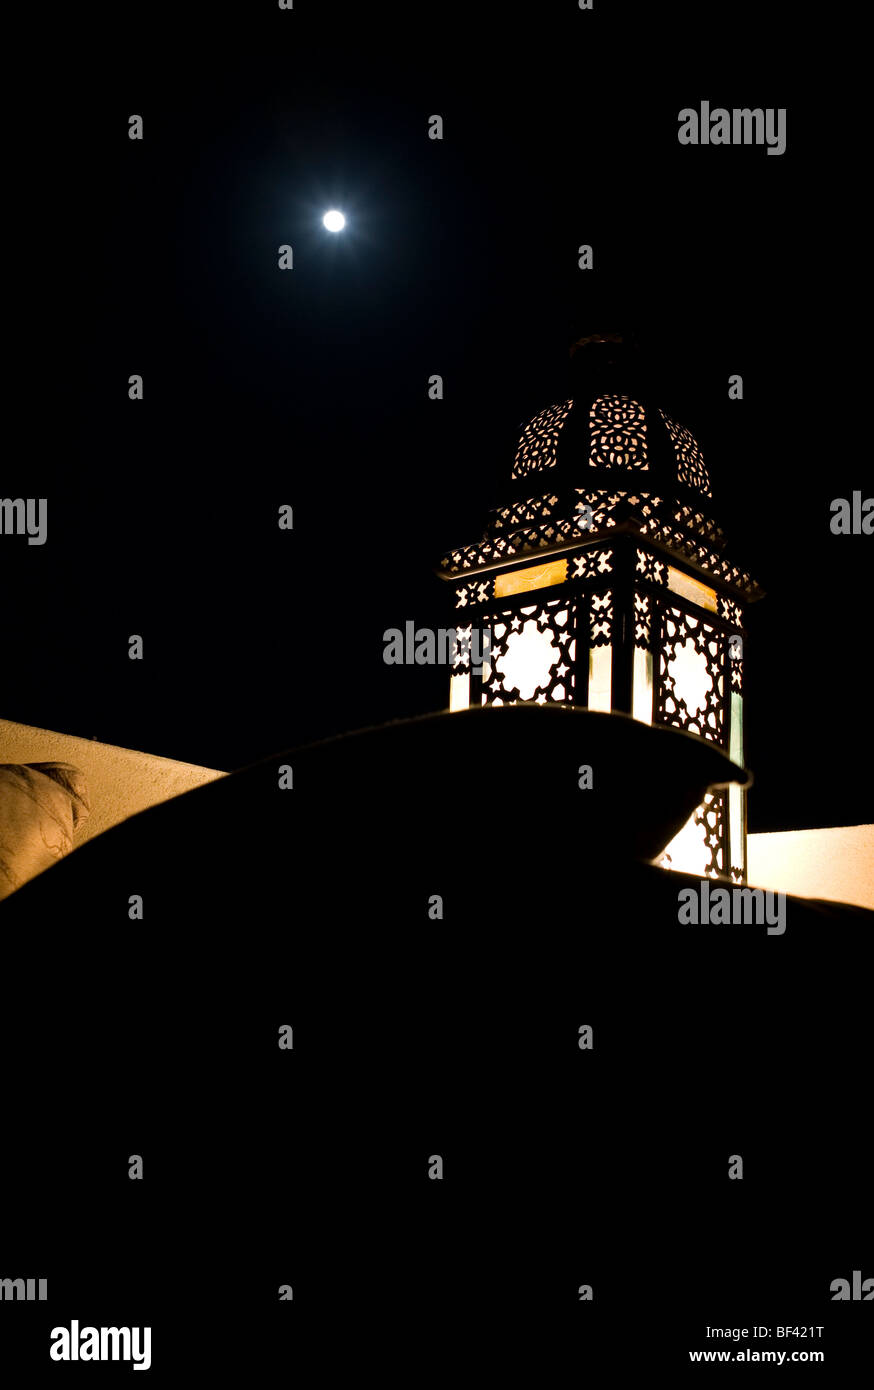 Arabian bougie de nuit avec un ciel clair, sombre et la lune en arrière-plan Banque D'Images